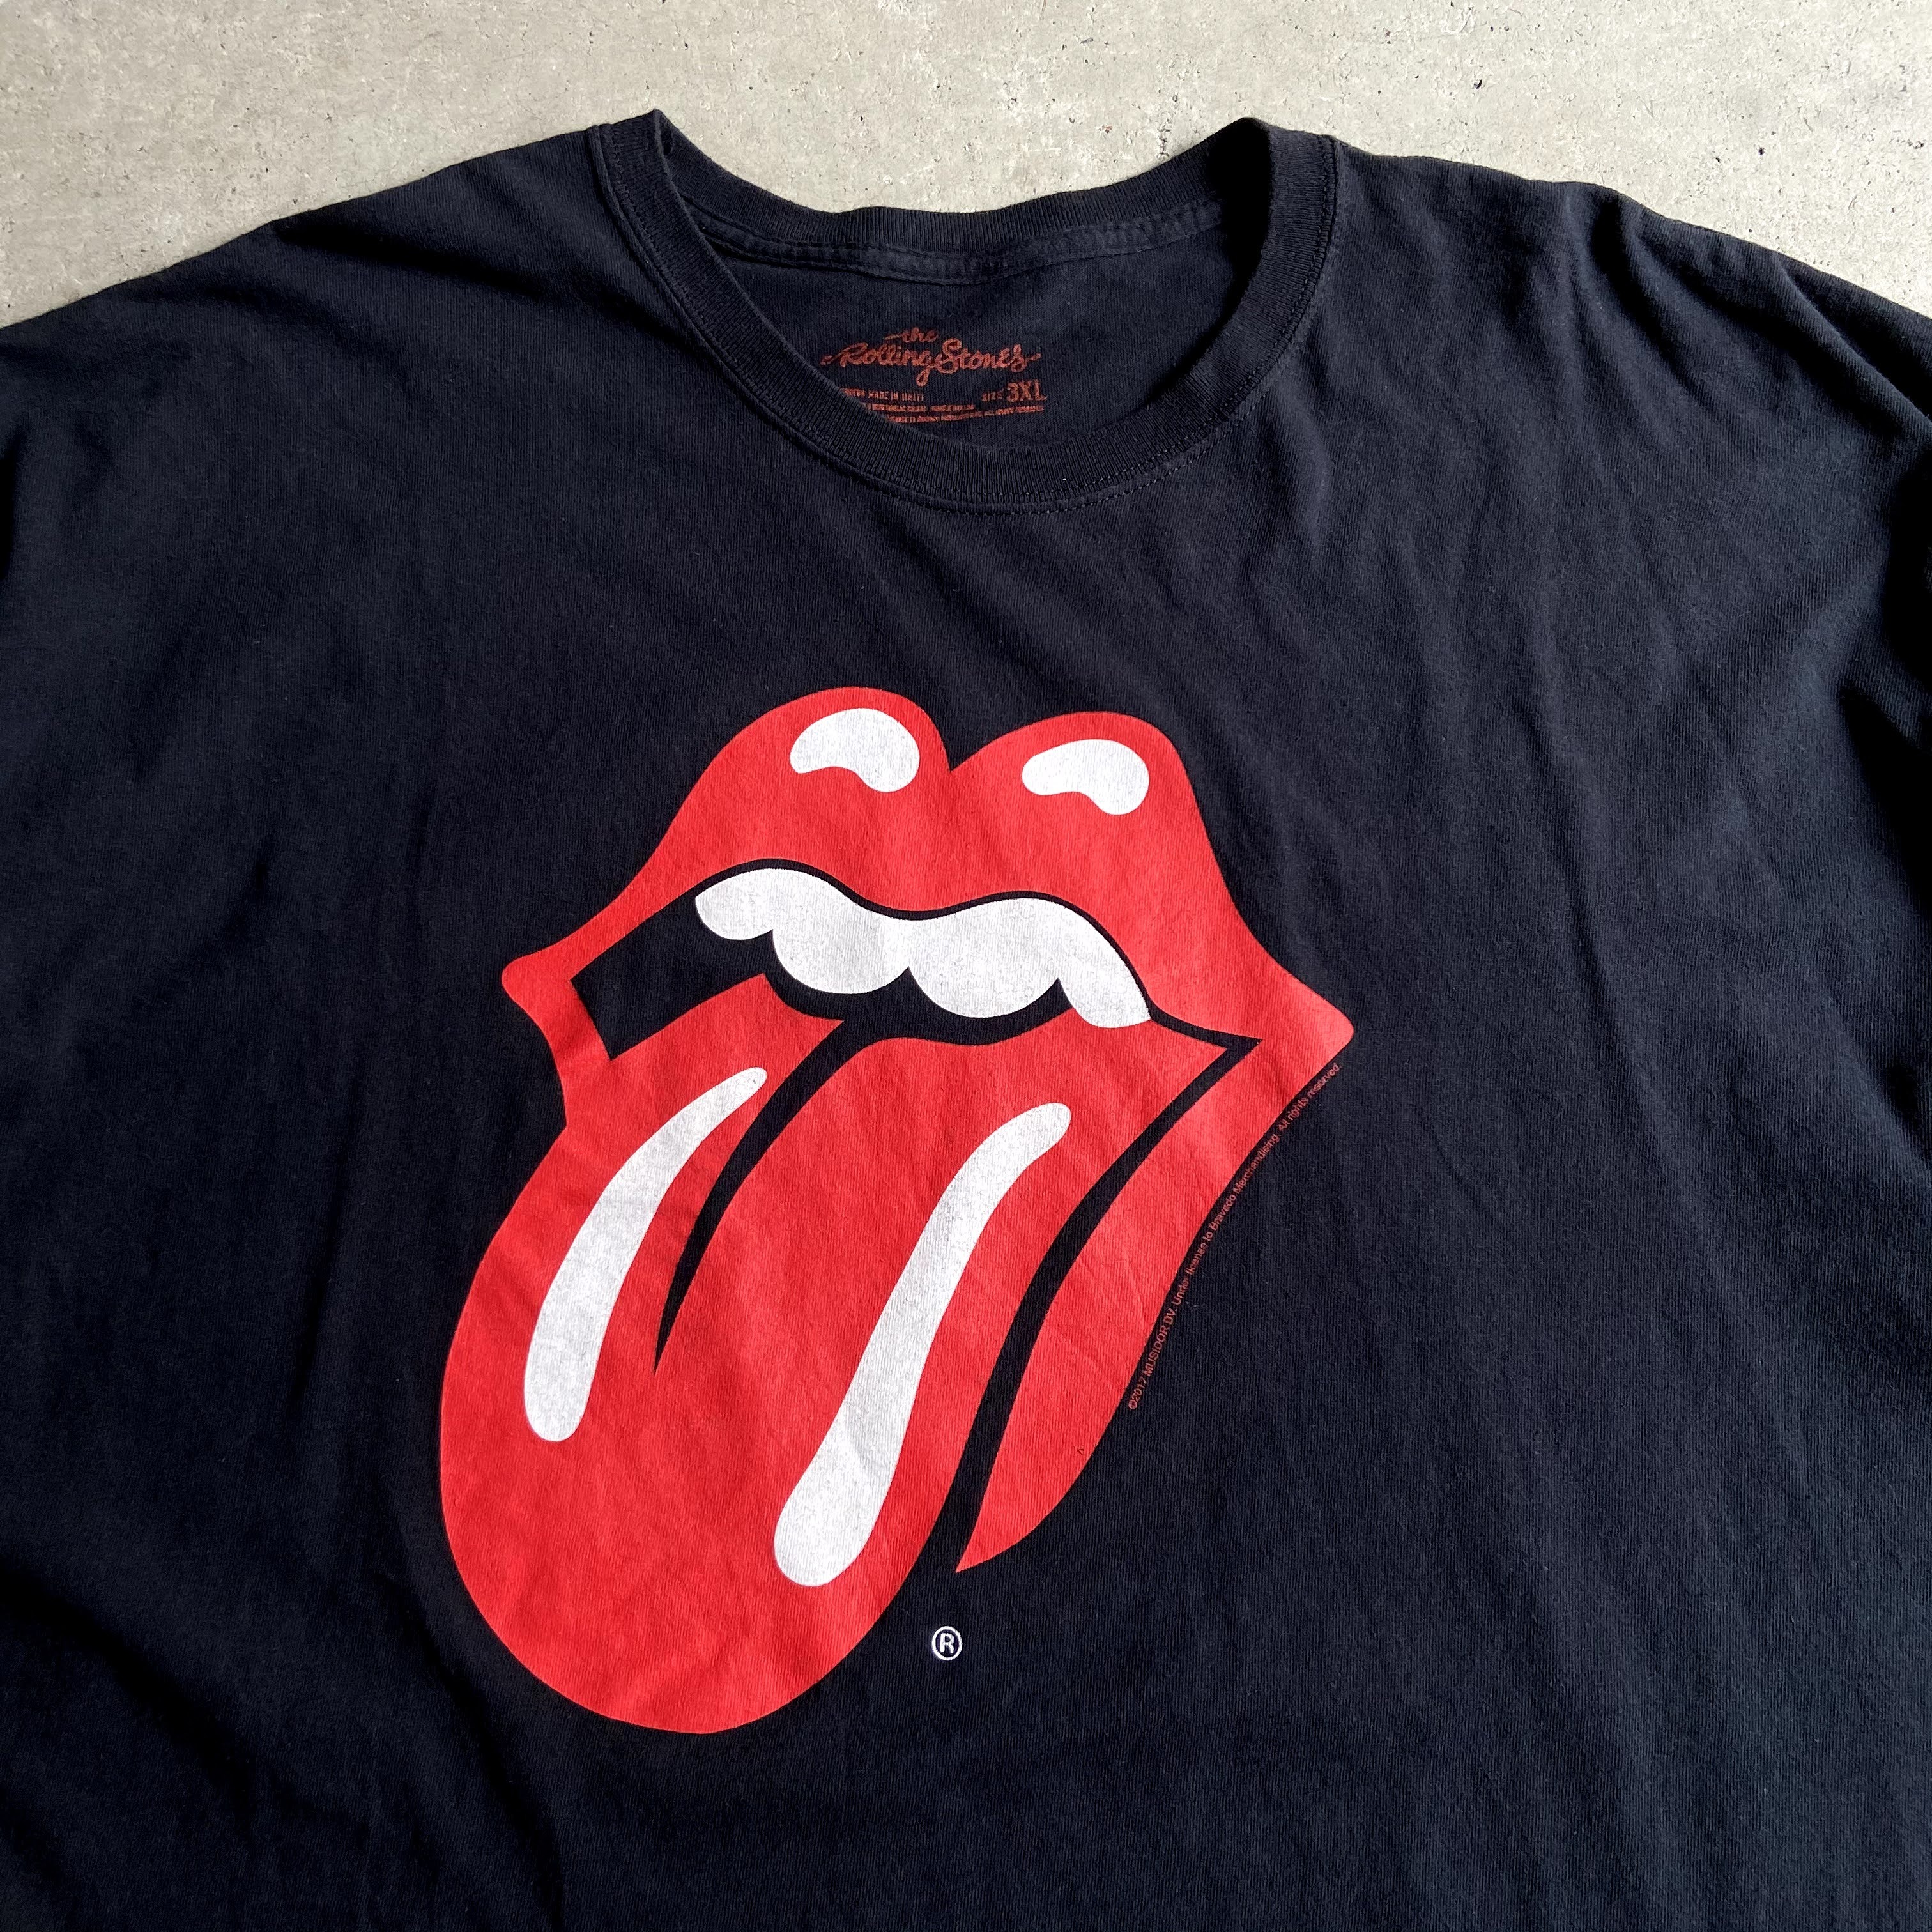 The Rolling Stones ローリングストーンズ ロゴプリント ロゴtシャツ バンドtシャツ メンズ3xl 古着 黒 ブラック Tシャツ Cave 古着屋 公式 古着通販サイト